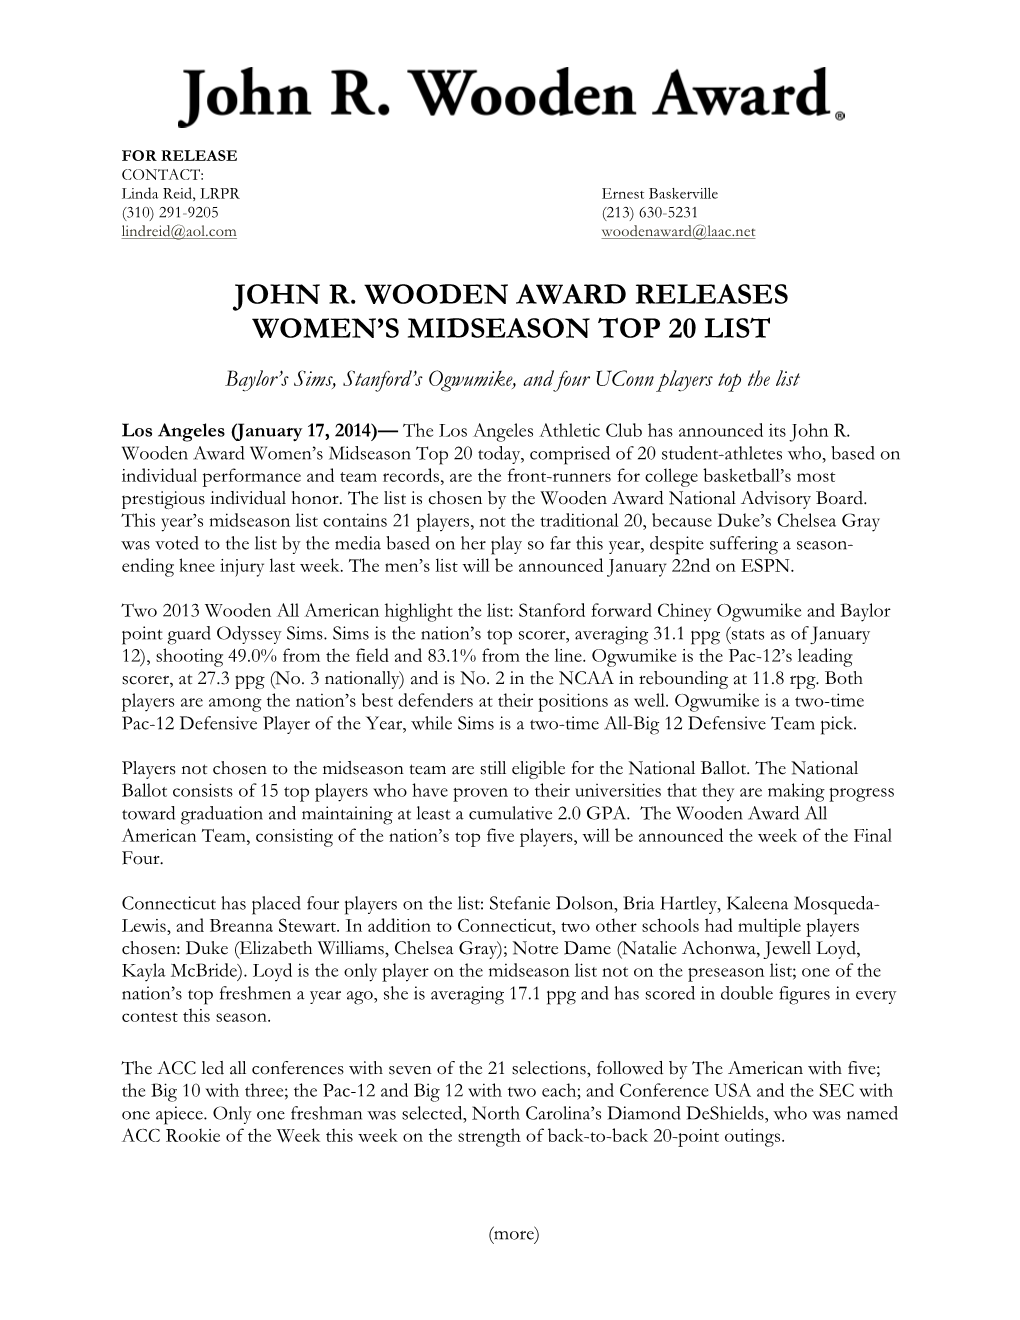 John R. Wooden Award Releases Women's